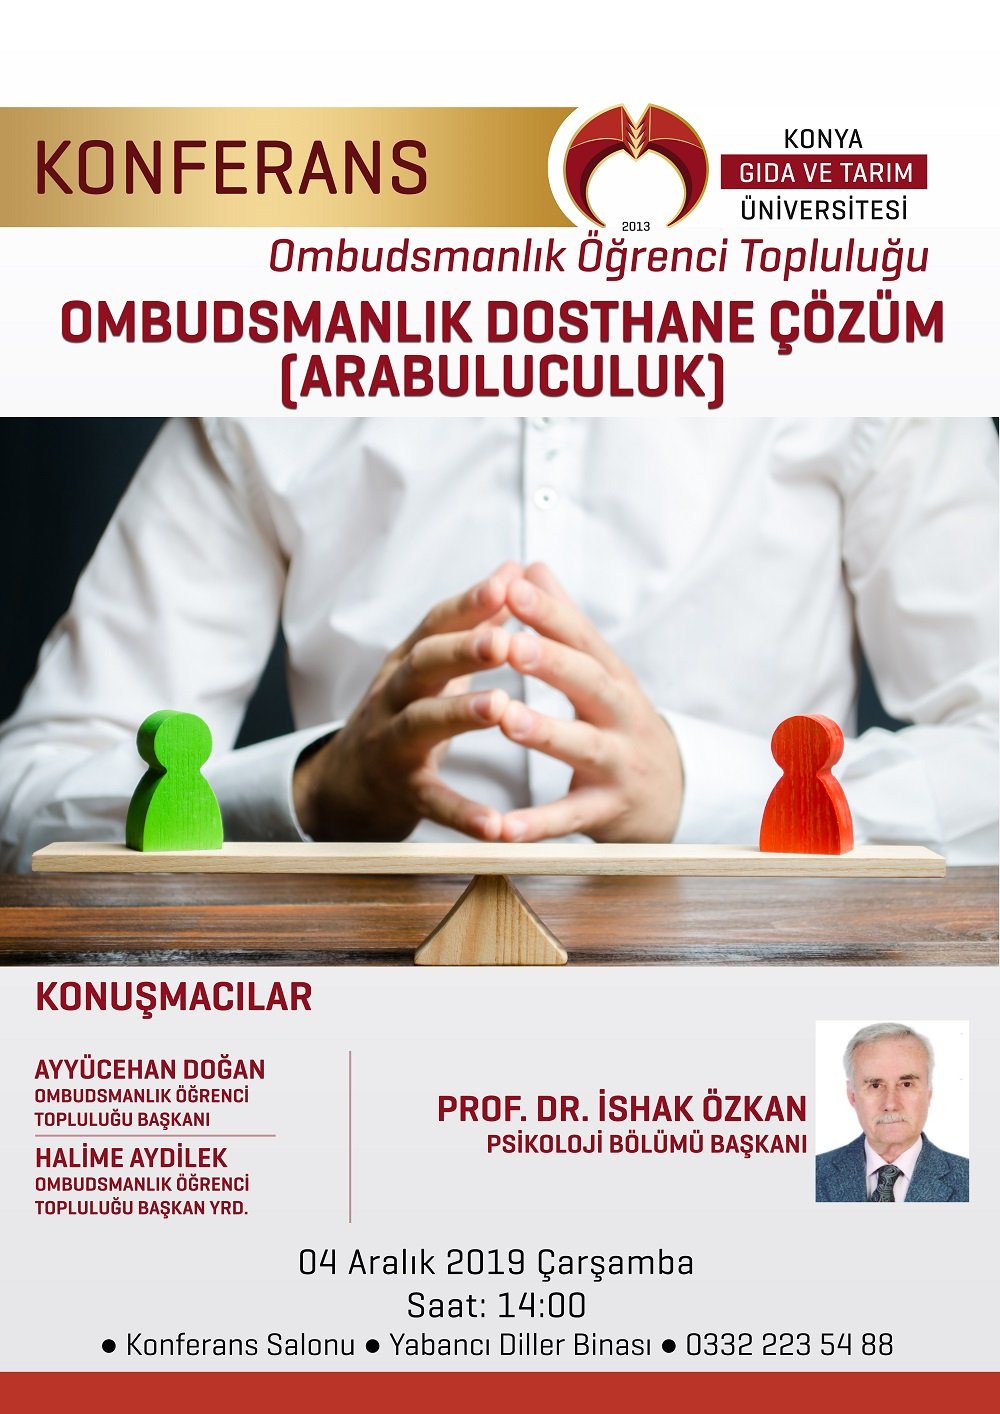 Konferans - Ombudsmanlık Dosthane Çözüm (Arabuluculuk) / 4 Aralık 2019 Çarşamba Saat 14:00